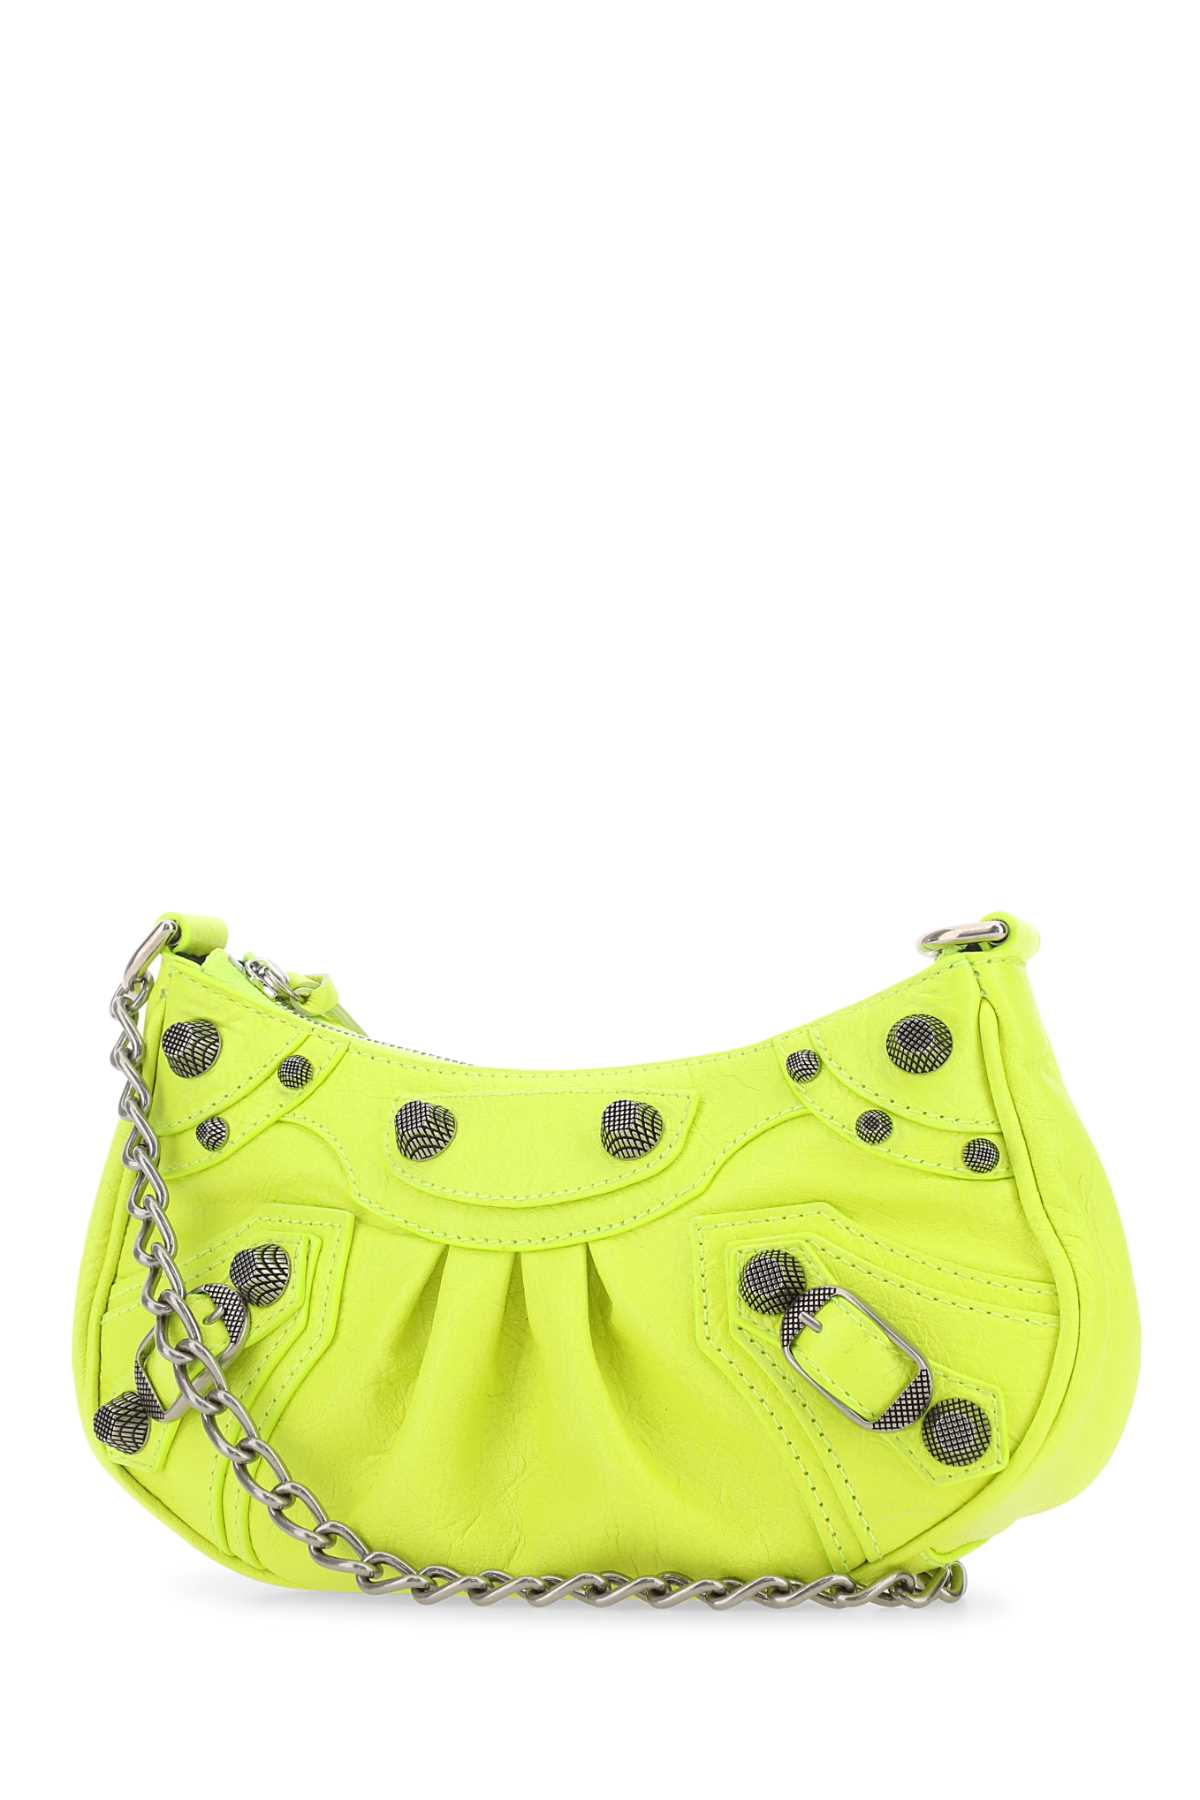 Shop Balenciaga Fluo Yellow Leather Le Cagole Mini Handbag